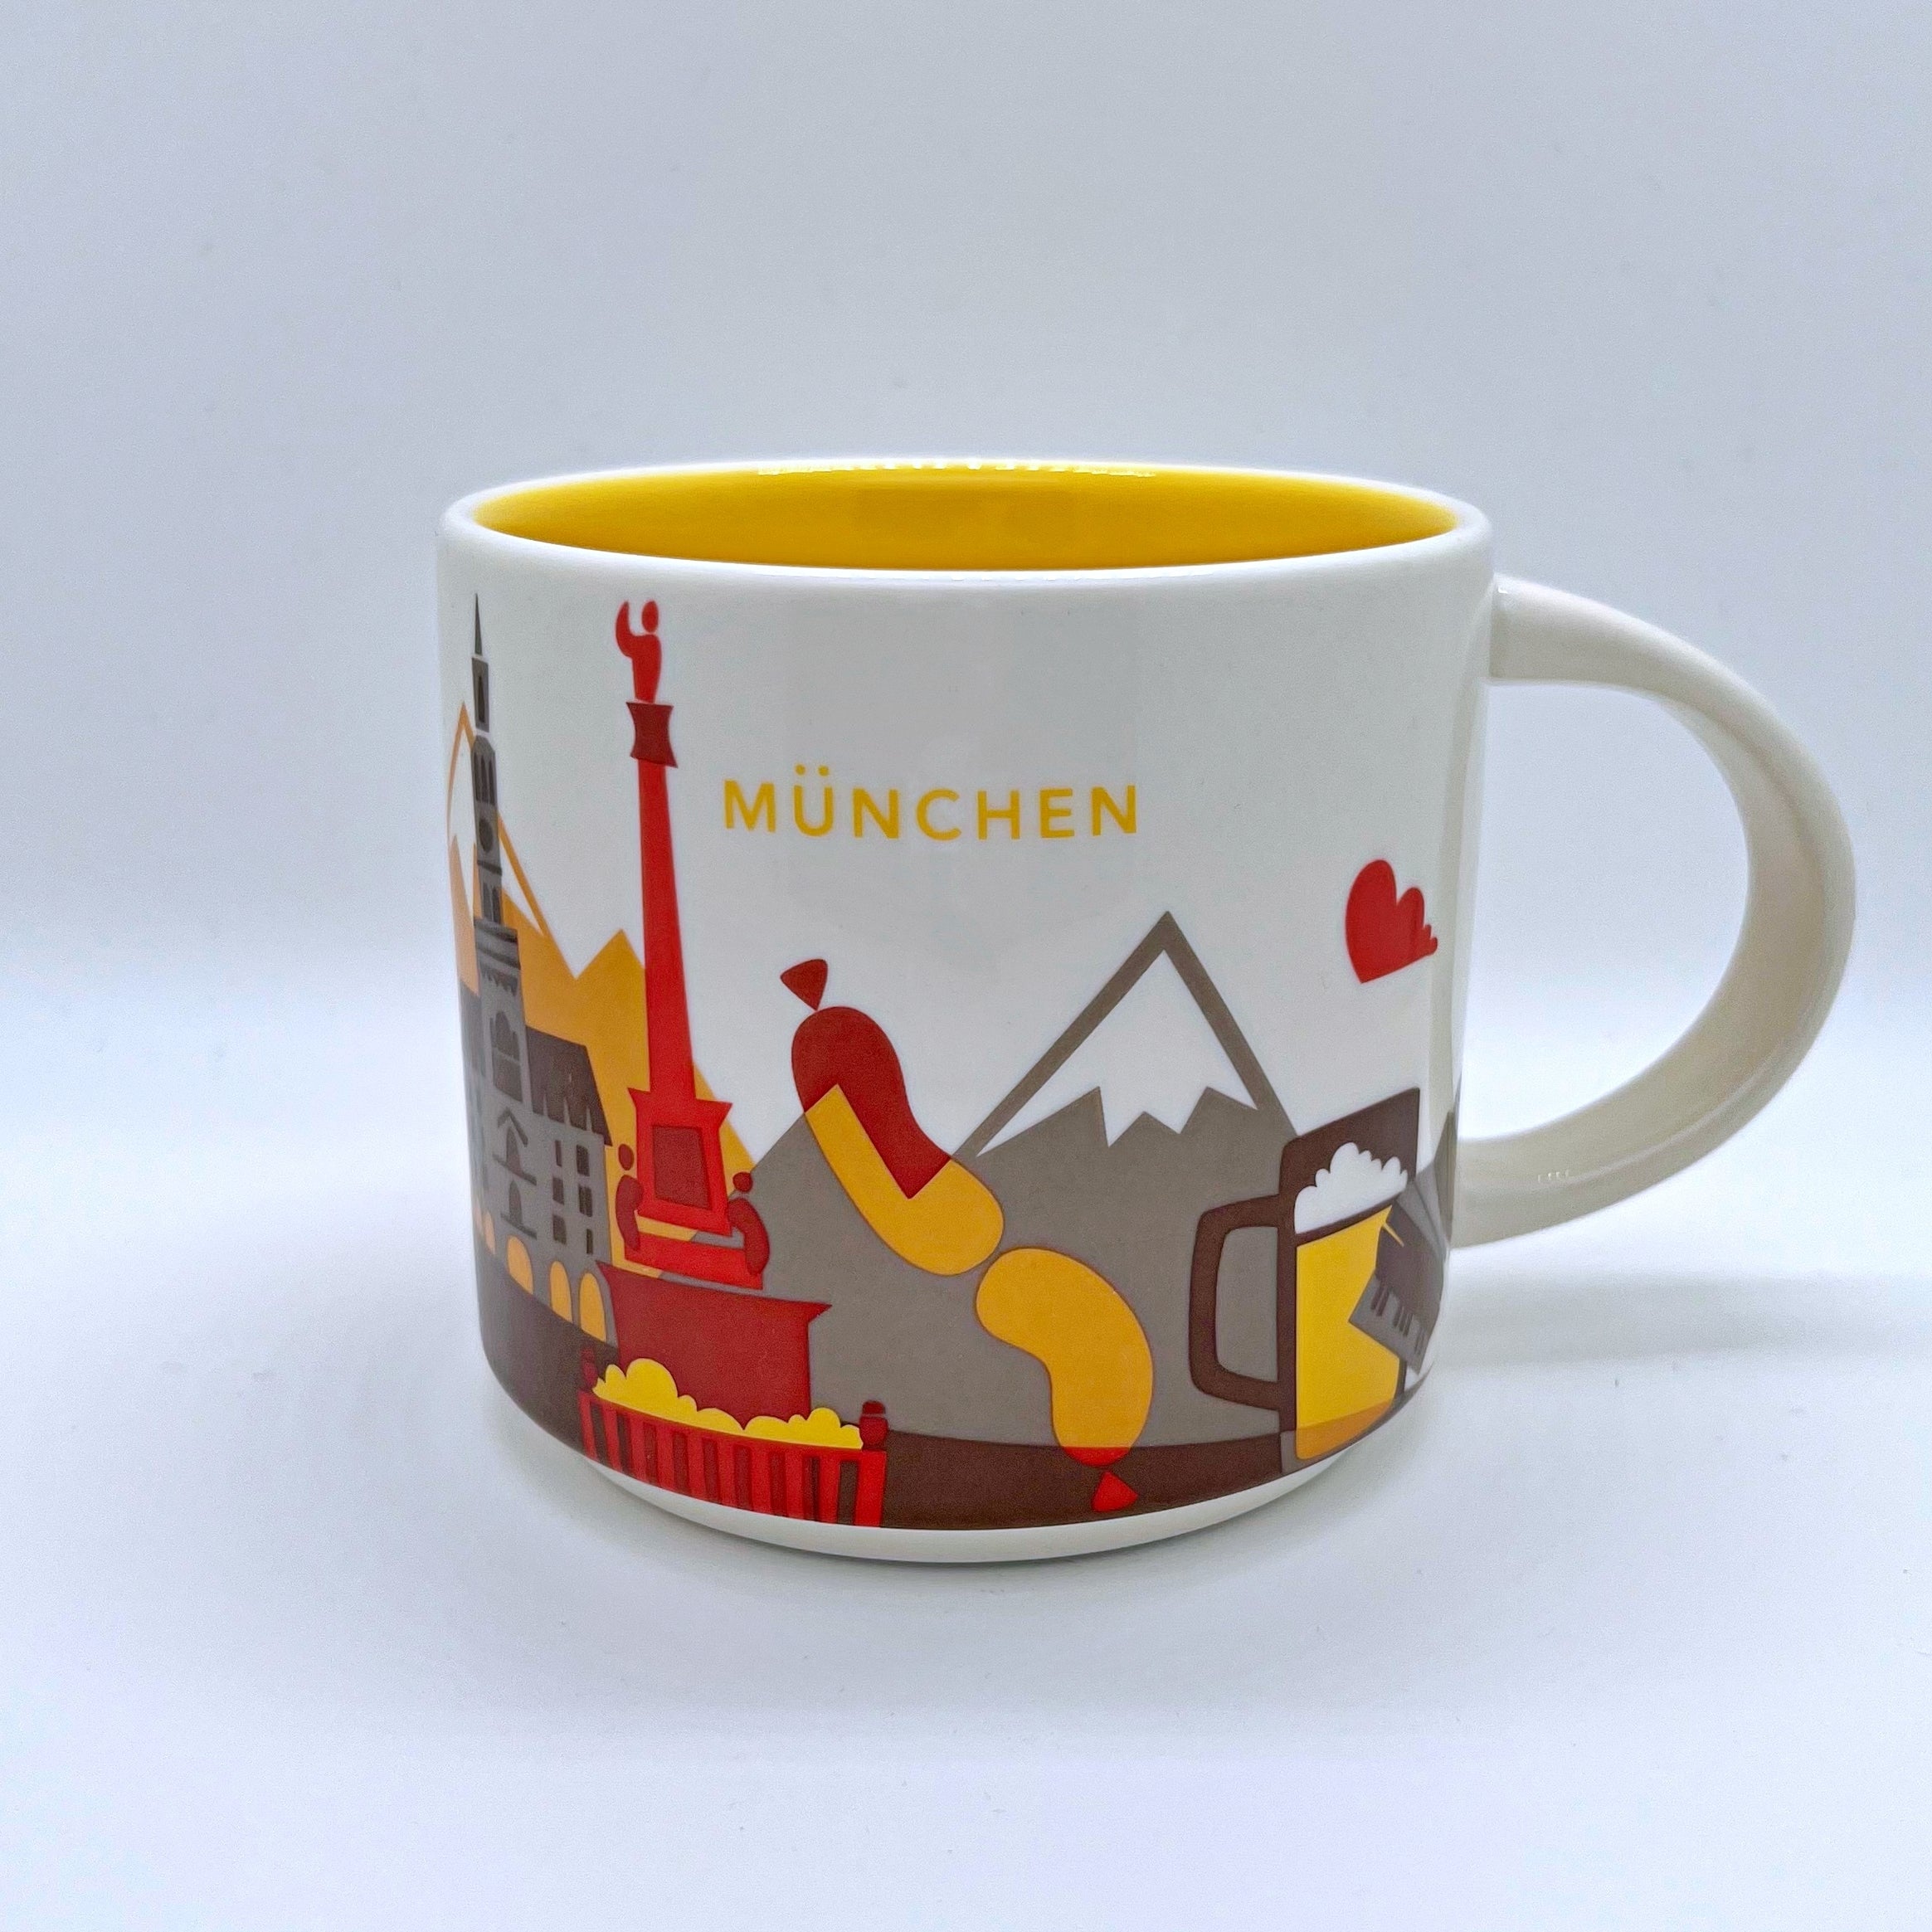 Kaffee Tee oder Cappuccino Tasse von Starbucks mit gemalten Bildern aus der Stadt München